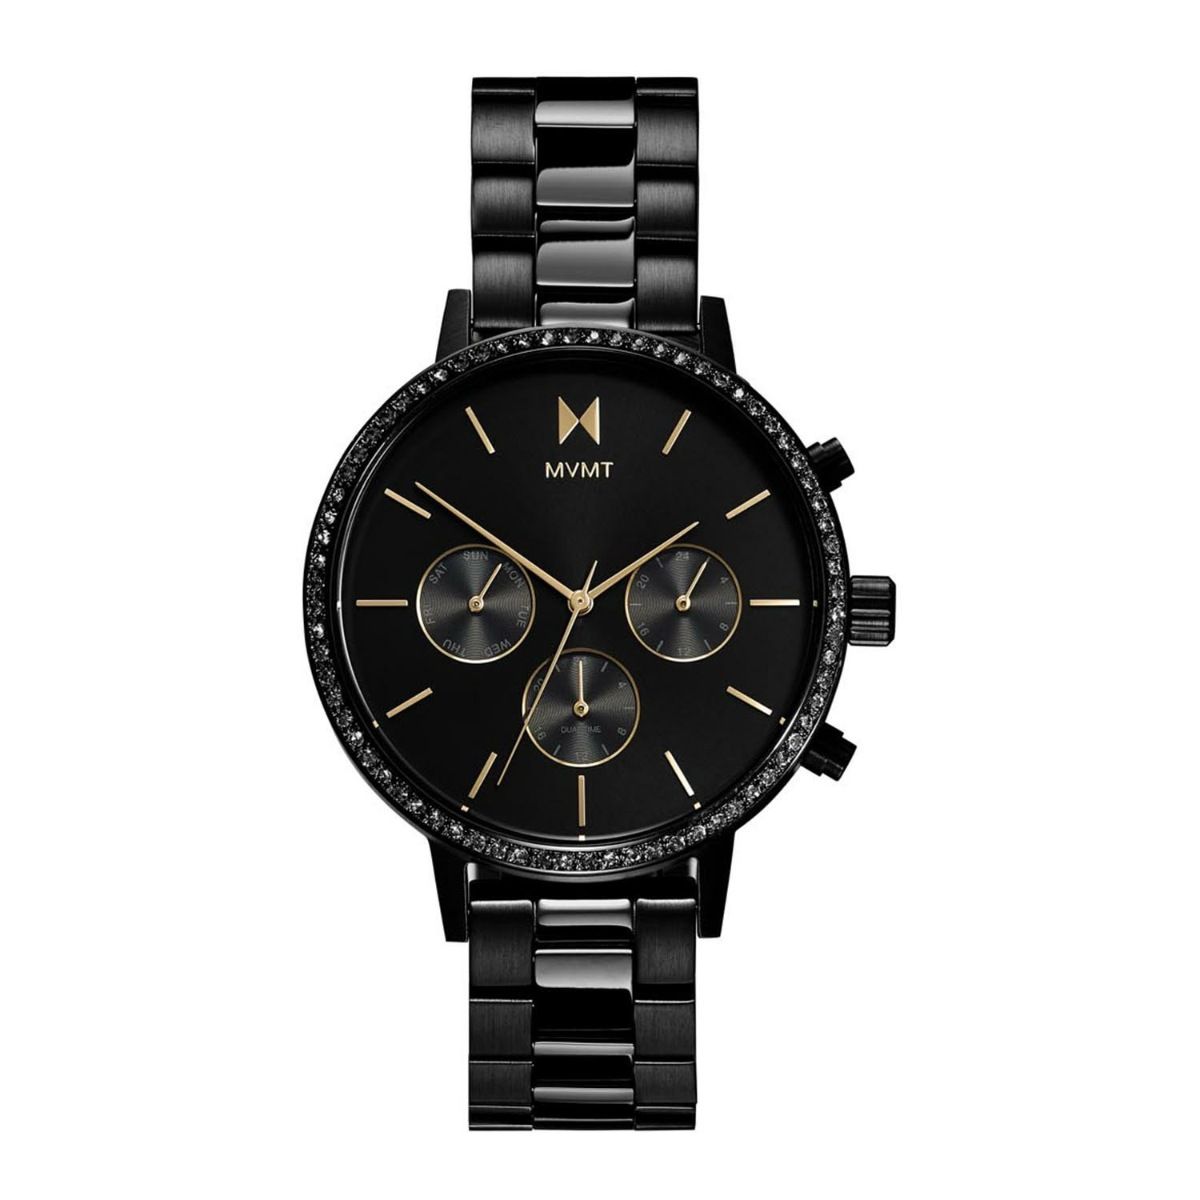 Jacob & Co. Caviar Tourbillon Hand Wind Diamond Silver Dial Watch  CV201.30.BD.BD.A30BA | Luxury watches for men, Richard mille watches, Best  watches for men